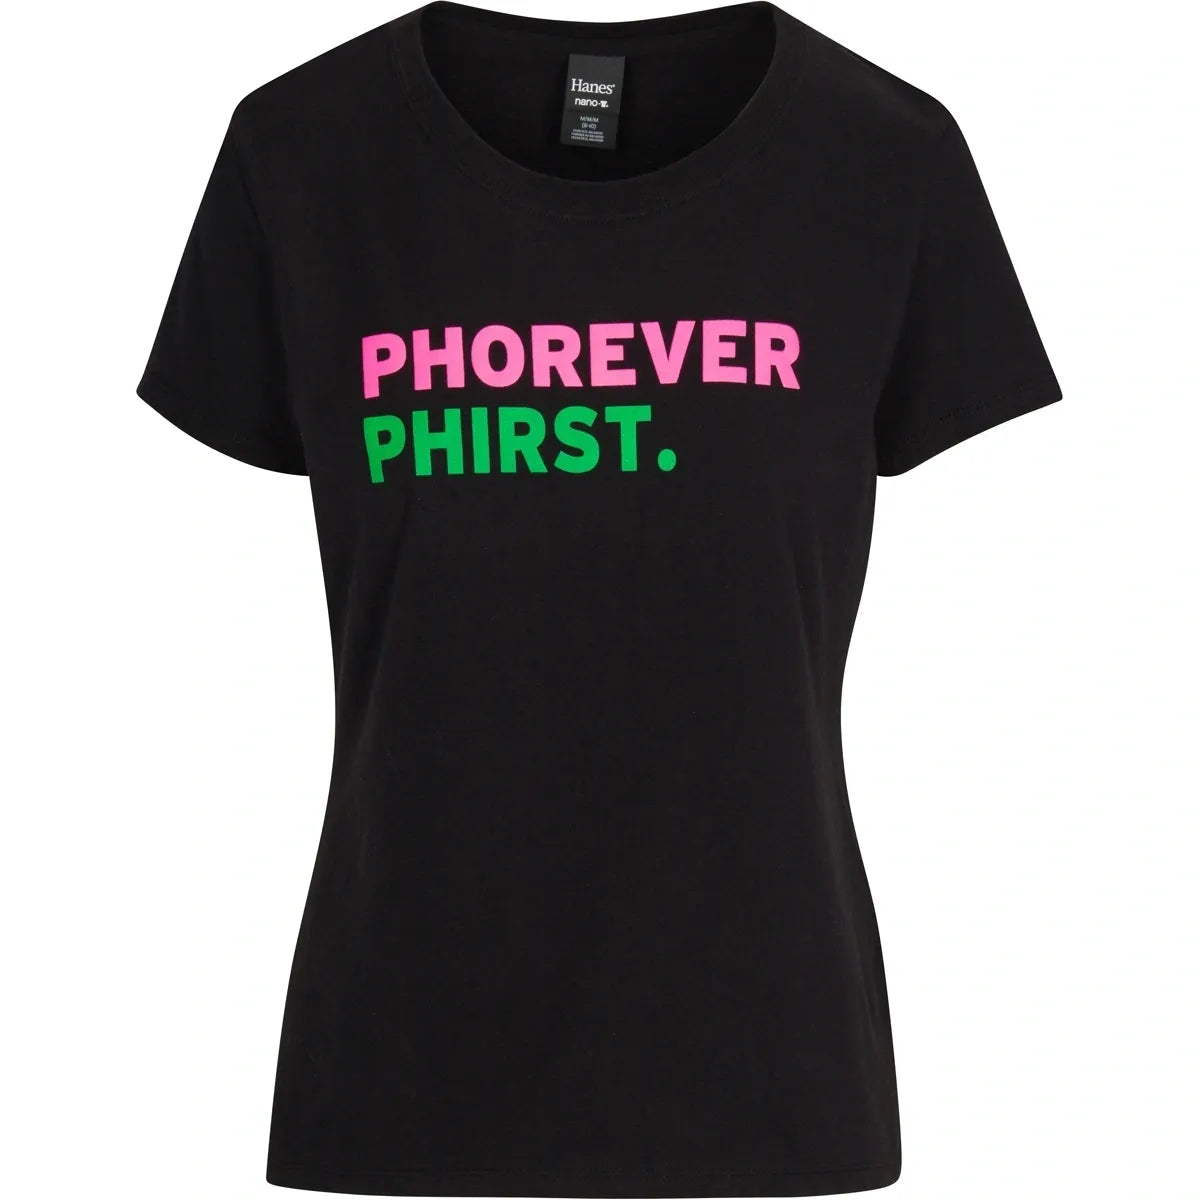 Phorever Phirst. T-shirt